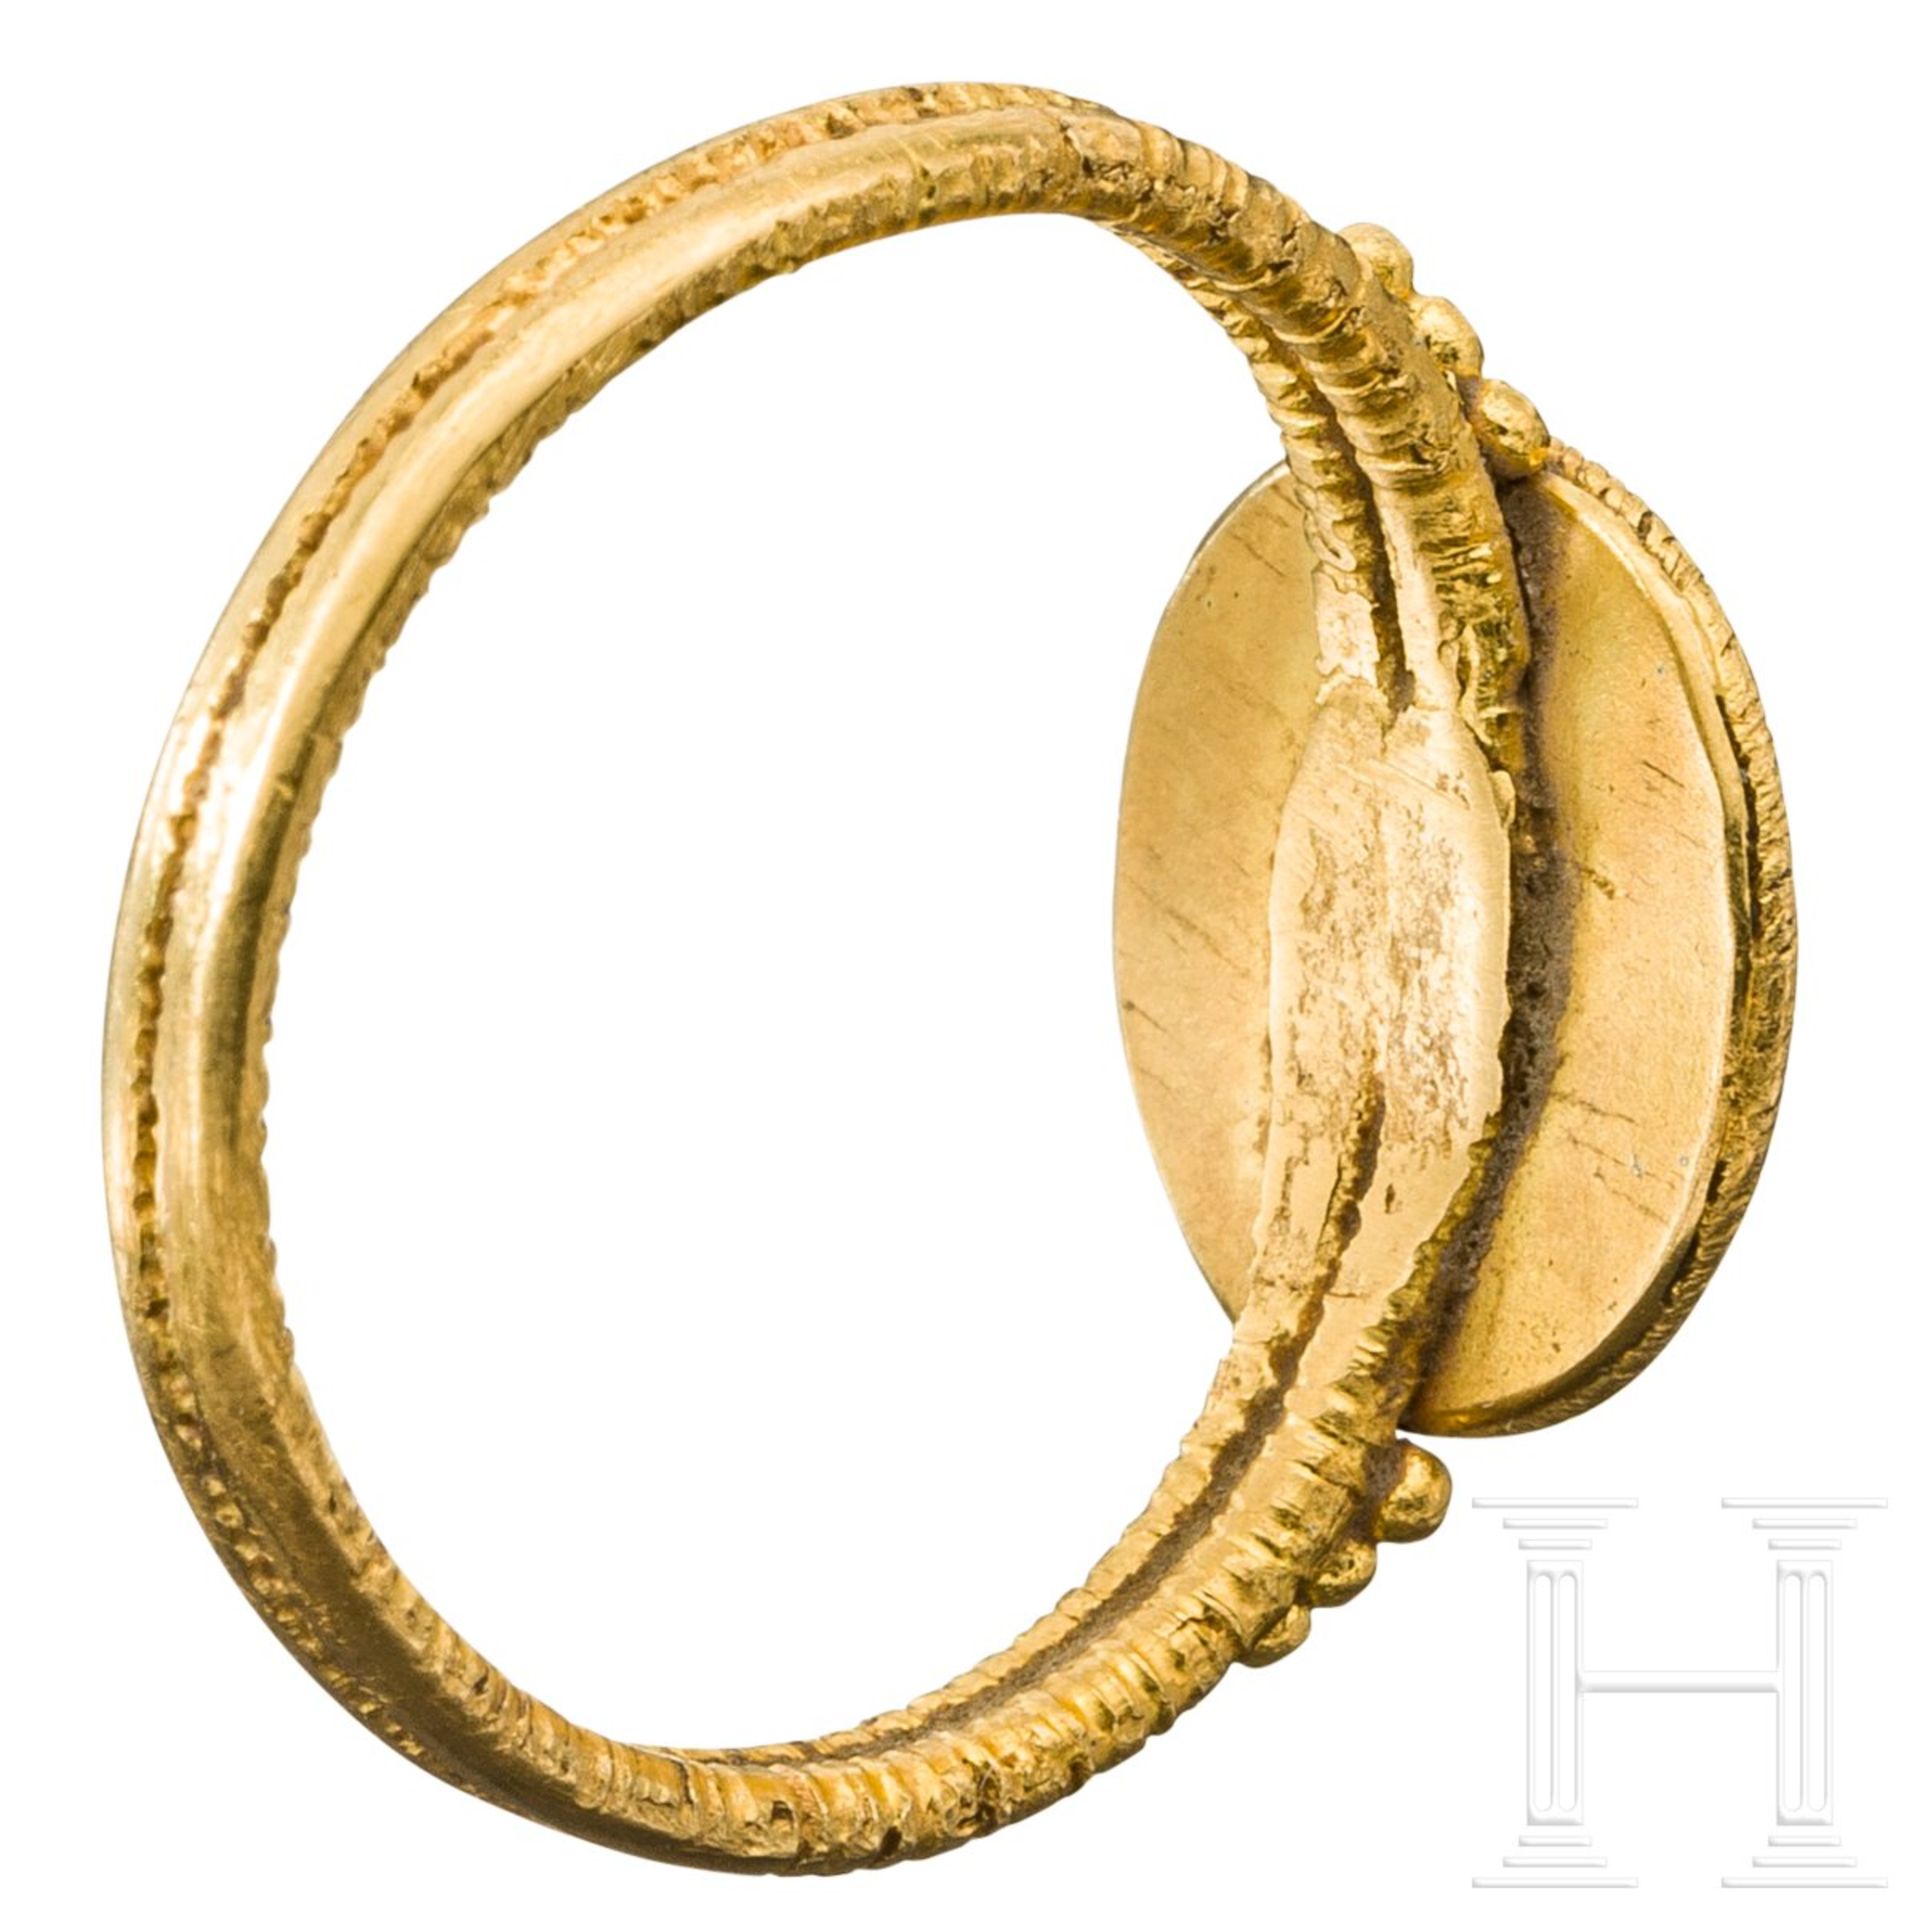 Goldener Ring mit Adlerkopf-Gemme im römischen Stil, 20. Jhdt. - Image 3 of 4